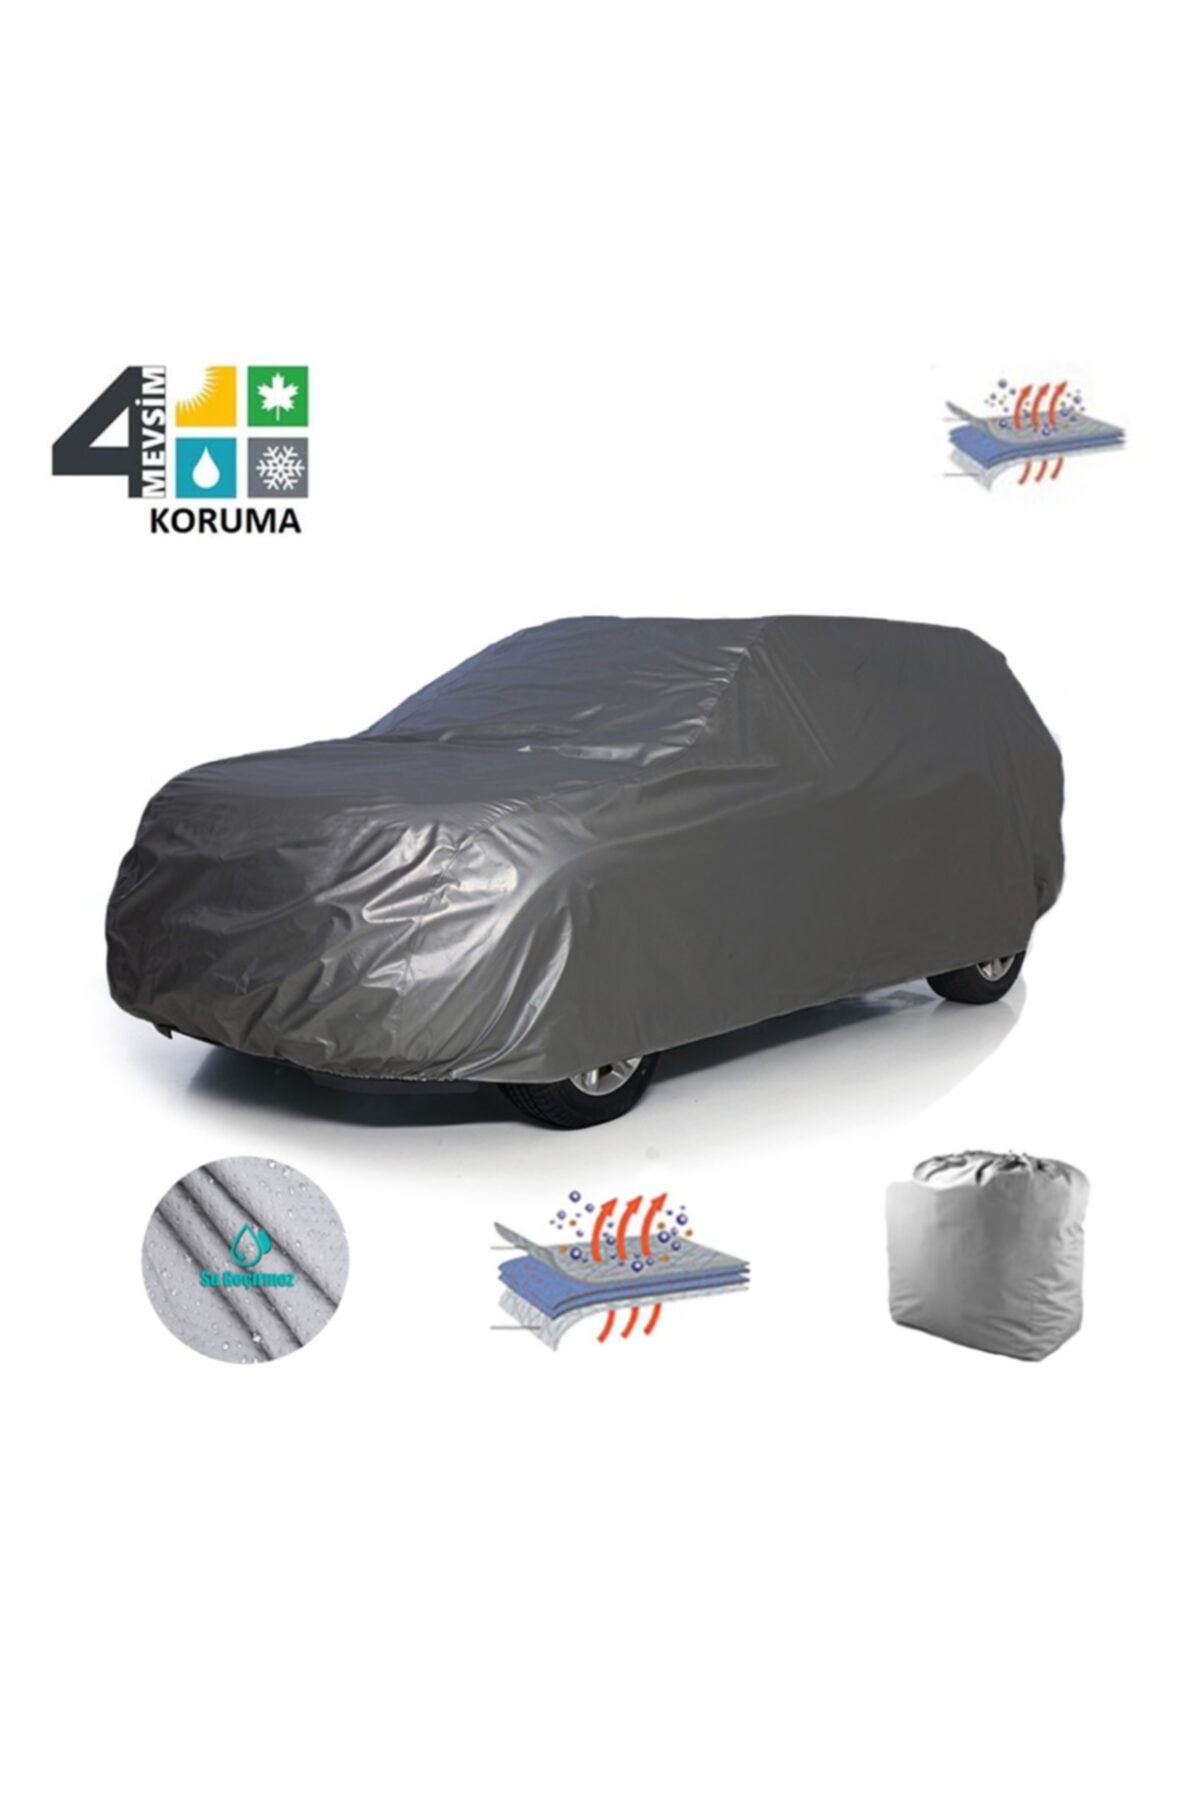 ENCAR Audi S8 Car Canvas, Cover, Tent - Trendyol